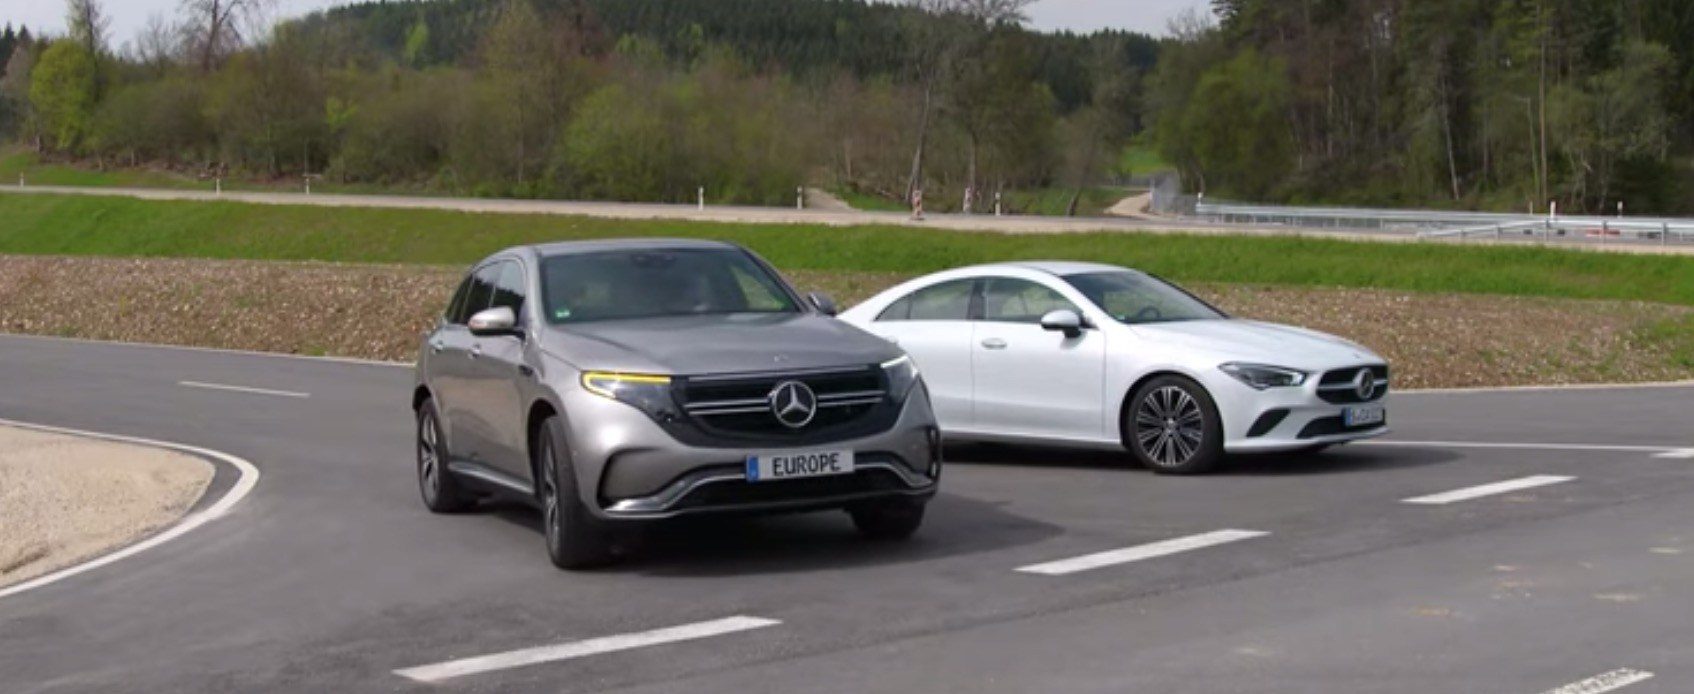 Mercedes, elektrikli araçlarına ekleyeceği motor sesini gösteren bir video paylaştı